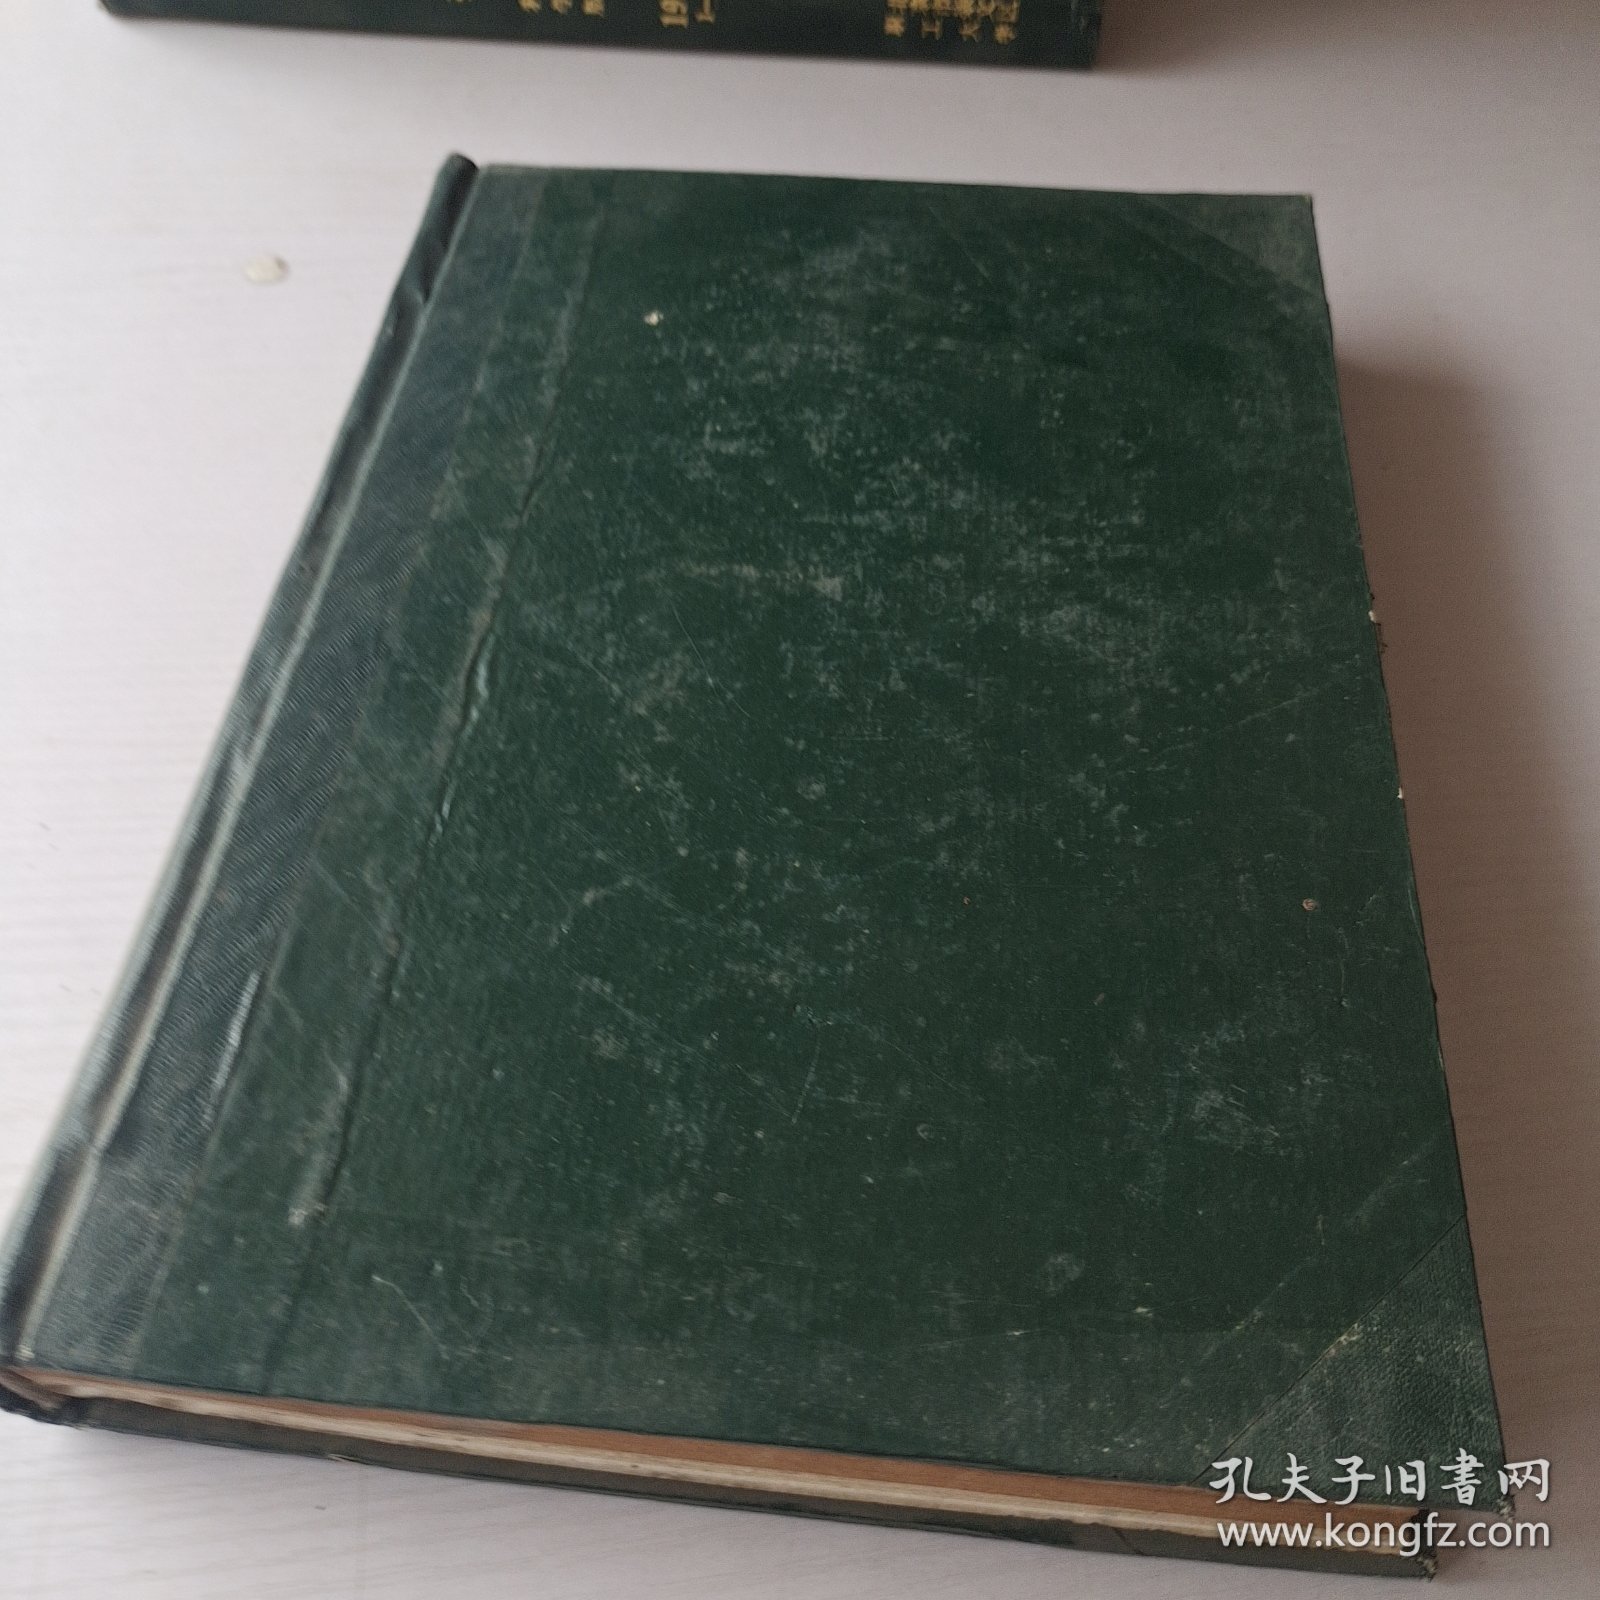 中国语文1985年1－6期精装合订本